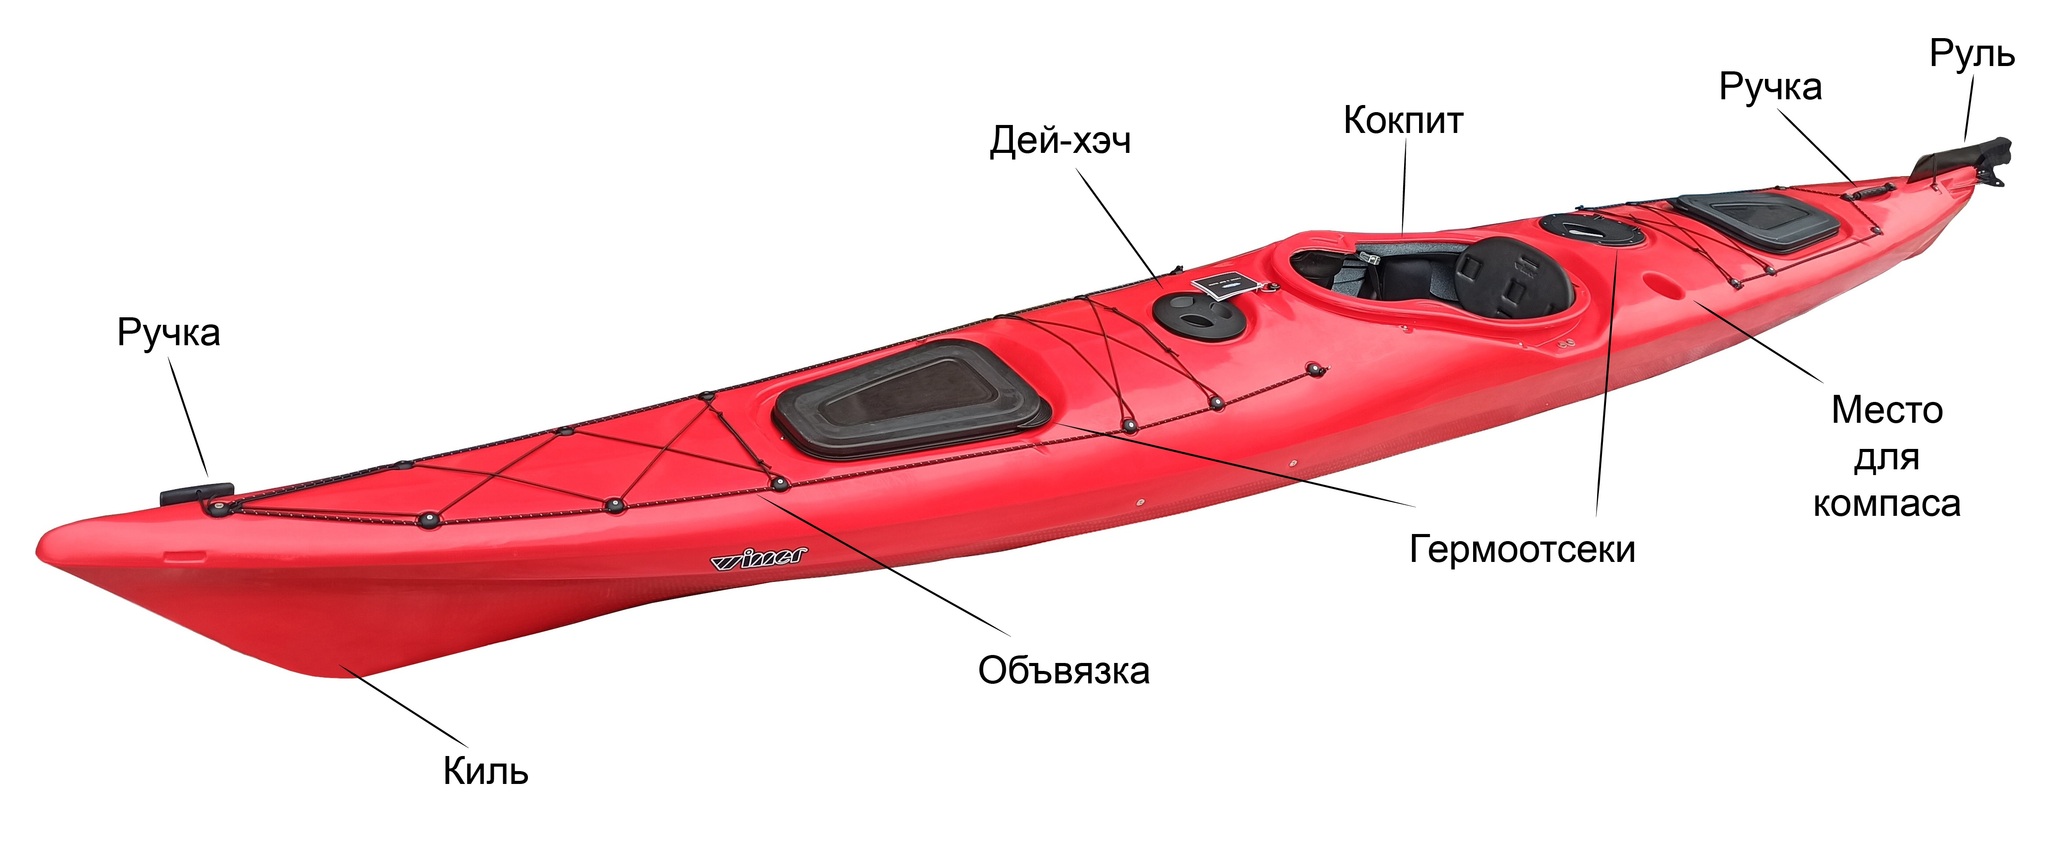 Тенты и чехлы для Моторной лодки МКМ (Ярославка)